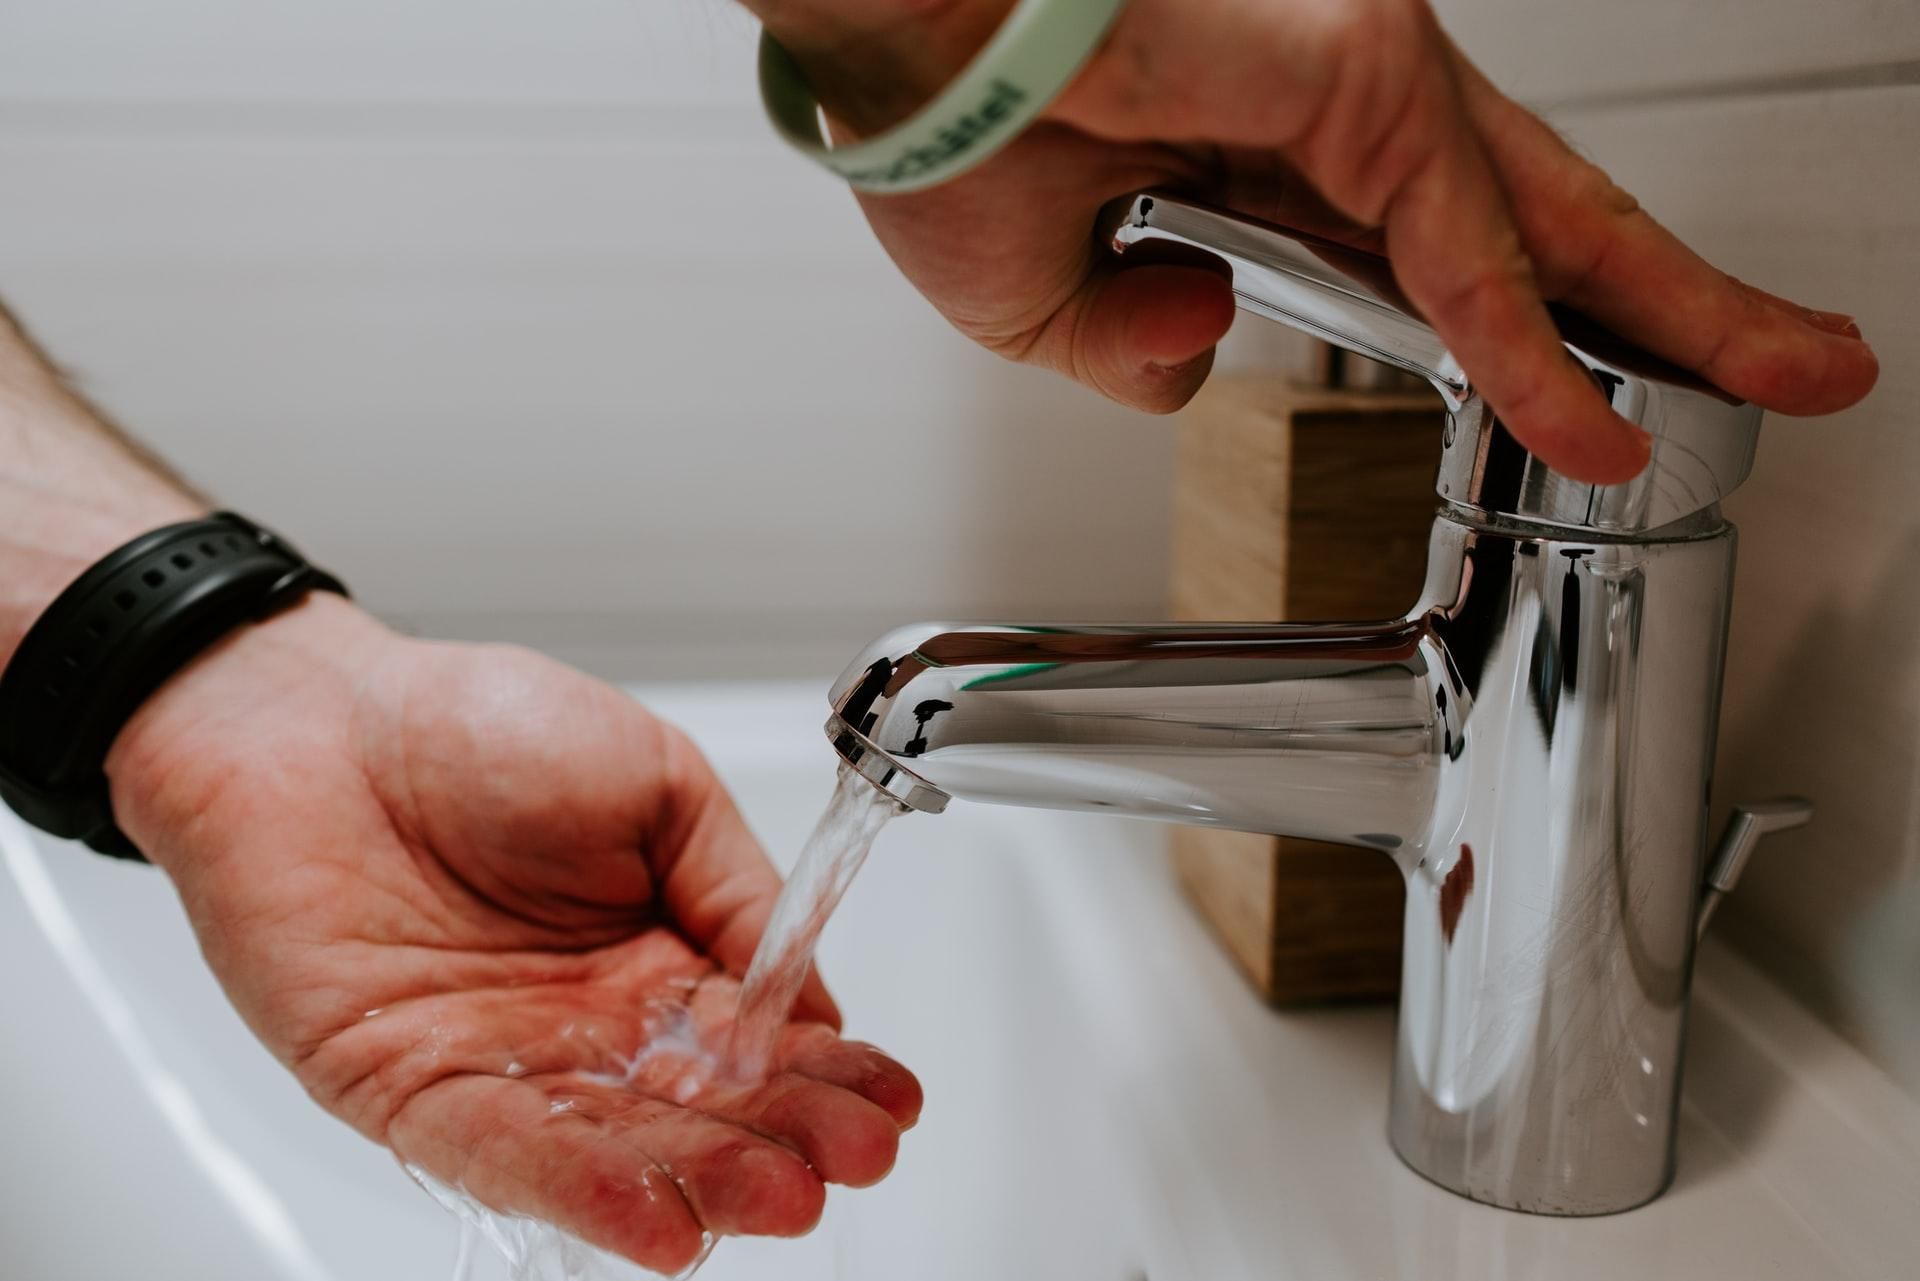 Как правильно мыть руки: подробная инструкция с видео